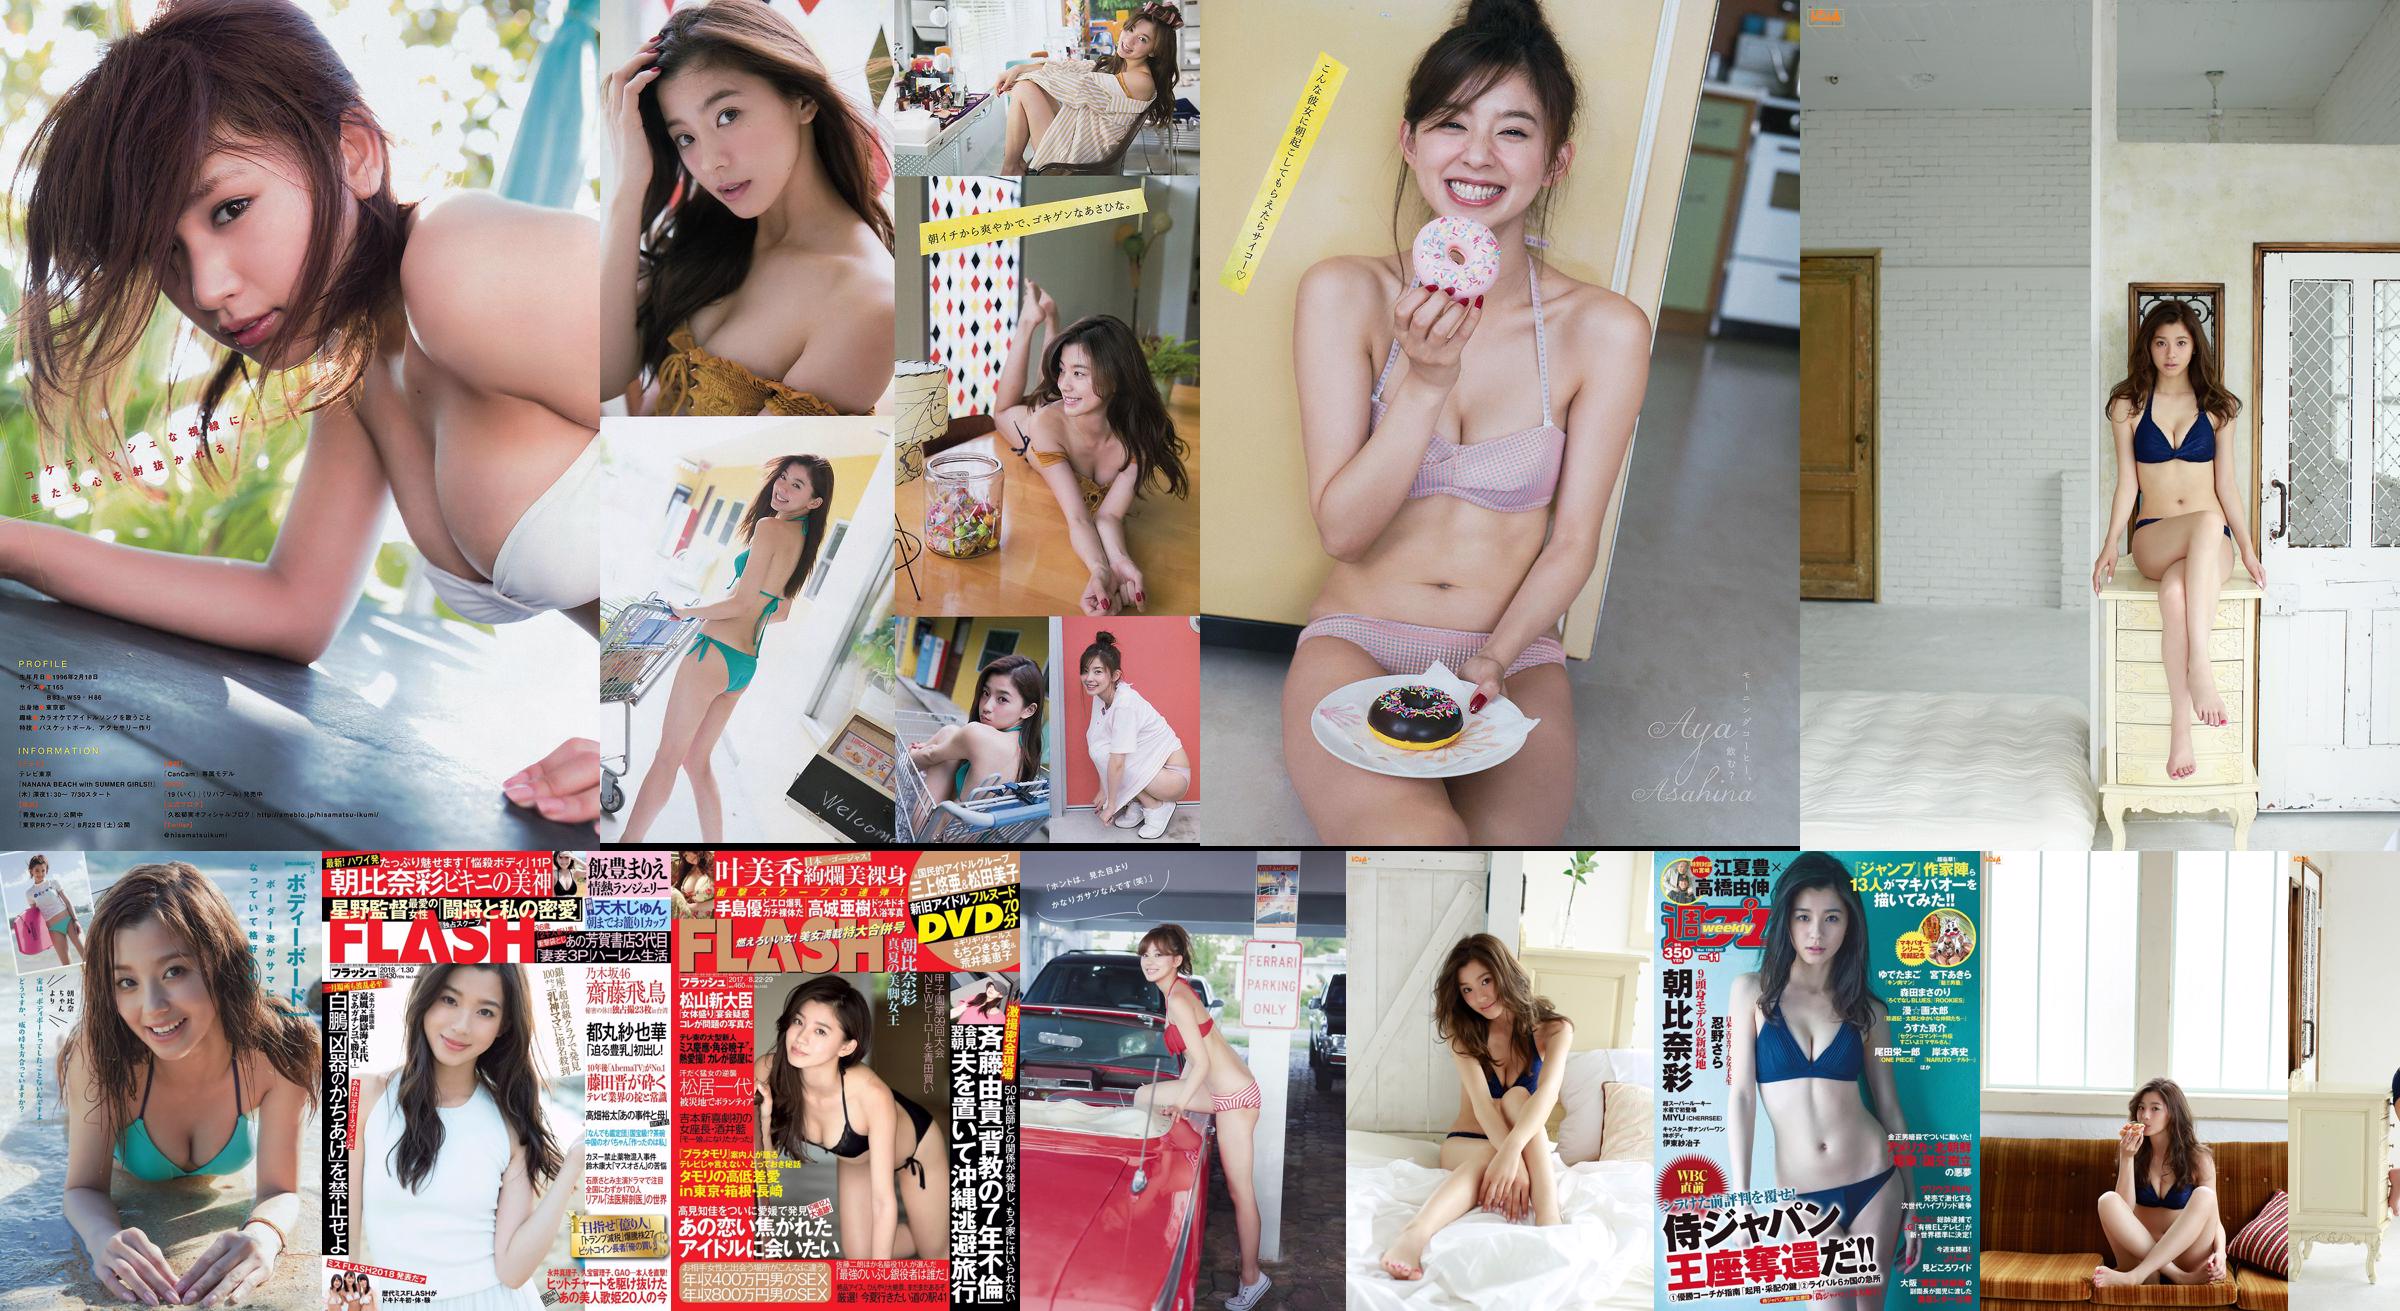 [FLASH] Aya Asahina Amatsu-sama Haruka Ayase RaMu Harukaze 14/08/2018 Photographie No.84a9d2 Page 1